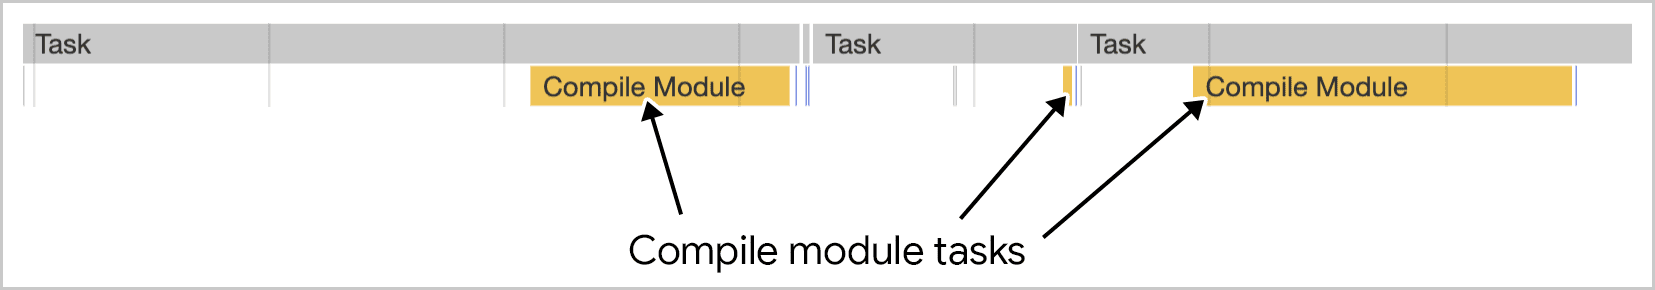 האיסוף של המודולים מתבצע בכמה משימות כפי שמתואר בכלי הפיתוח ל-Chrome.